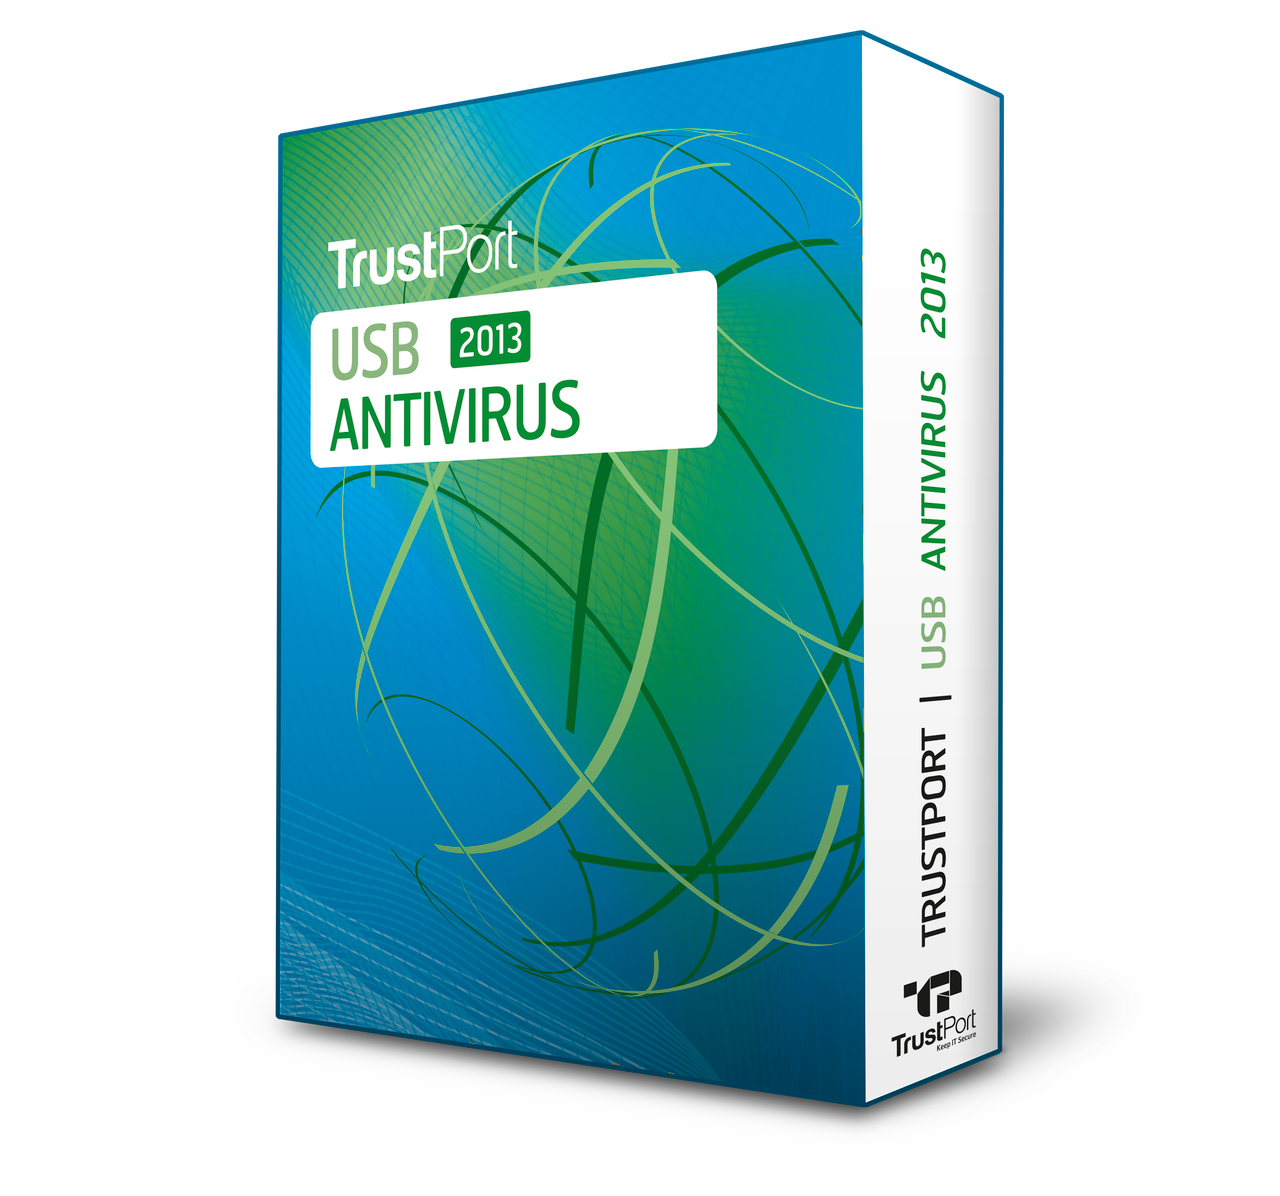 Rozdajemy kolejne licencje — dzisiaj TrustPort USB Antivirus 2013